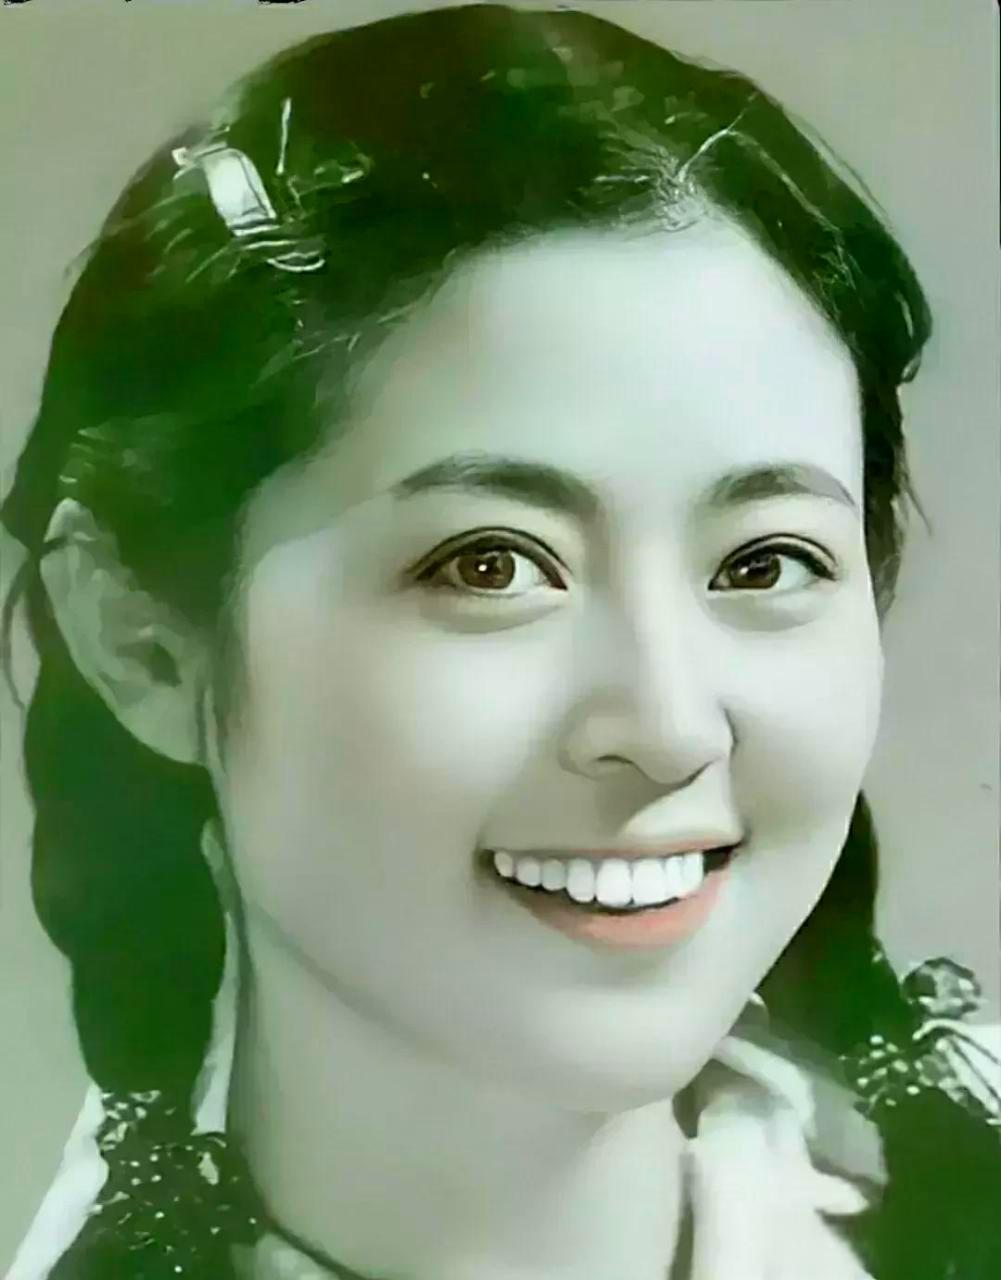 的传奇主持人 倪萍无疑是娱乐界的传奇人物,她年轻时的美貌令人惊叹